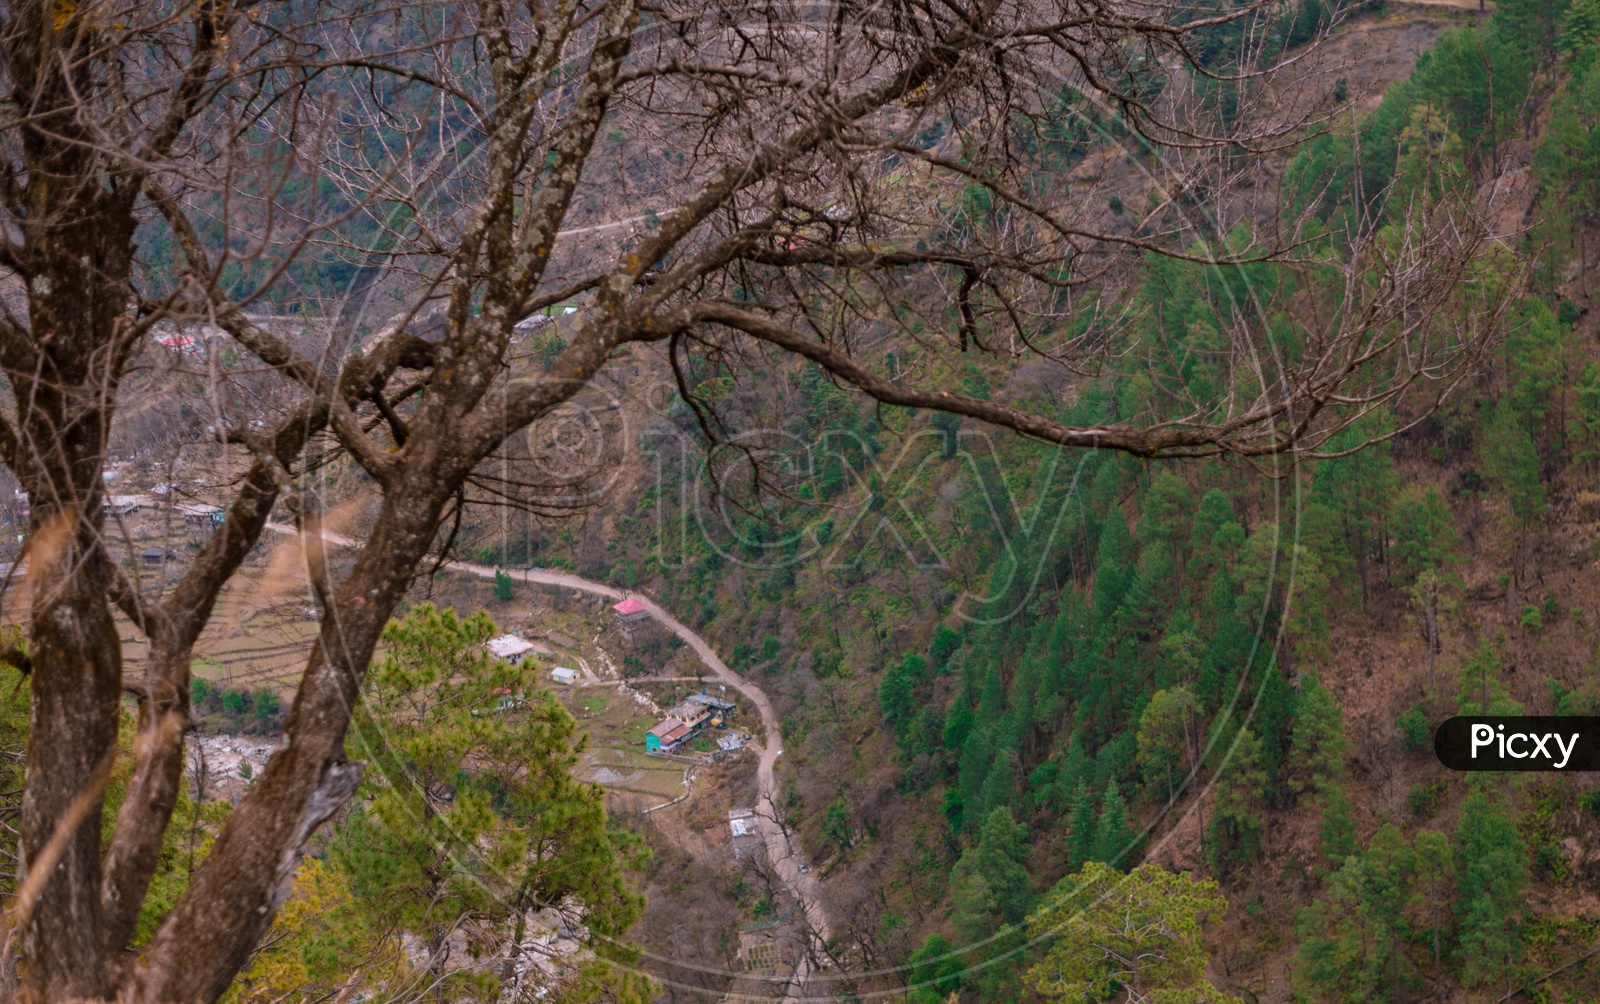 Autumn tree in Himalayas, Sainj Valley